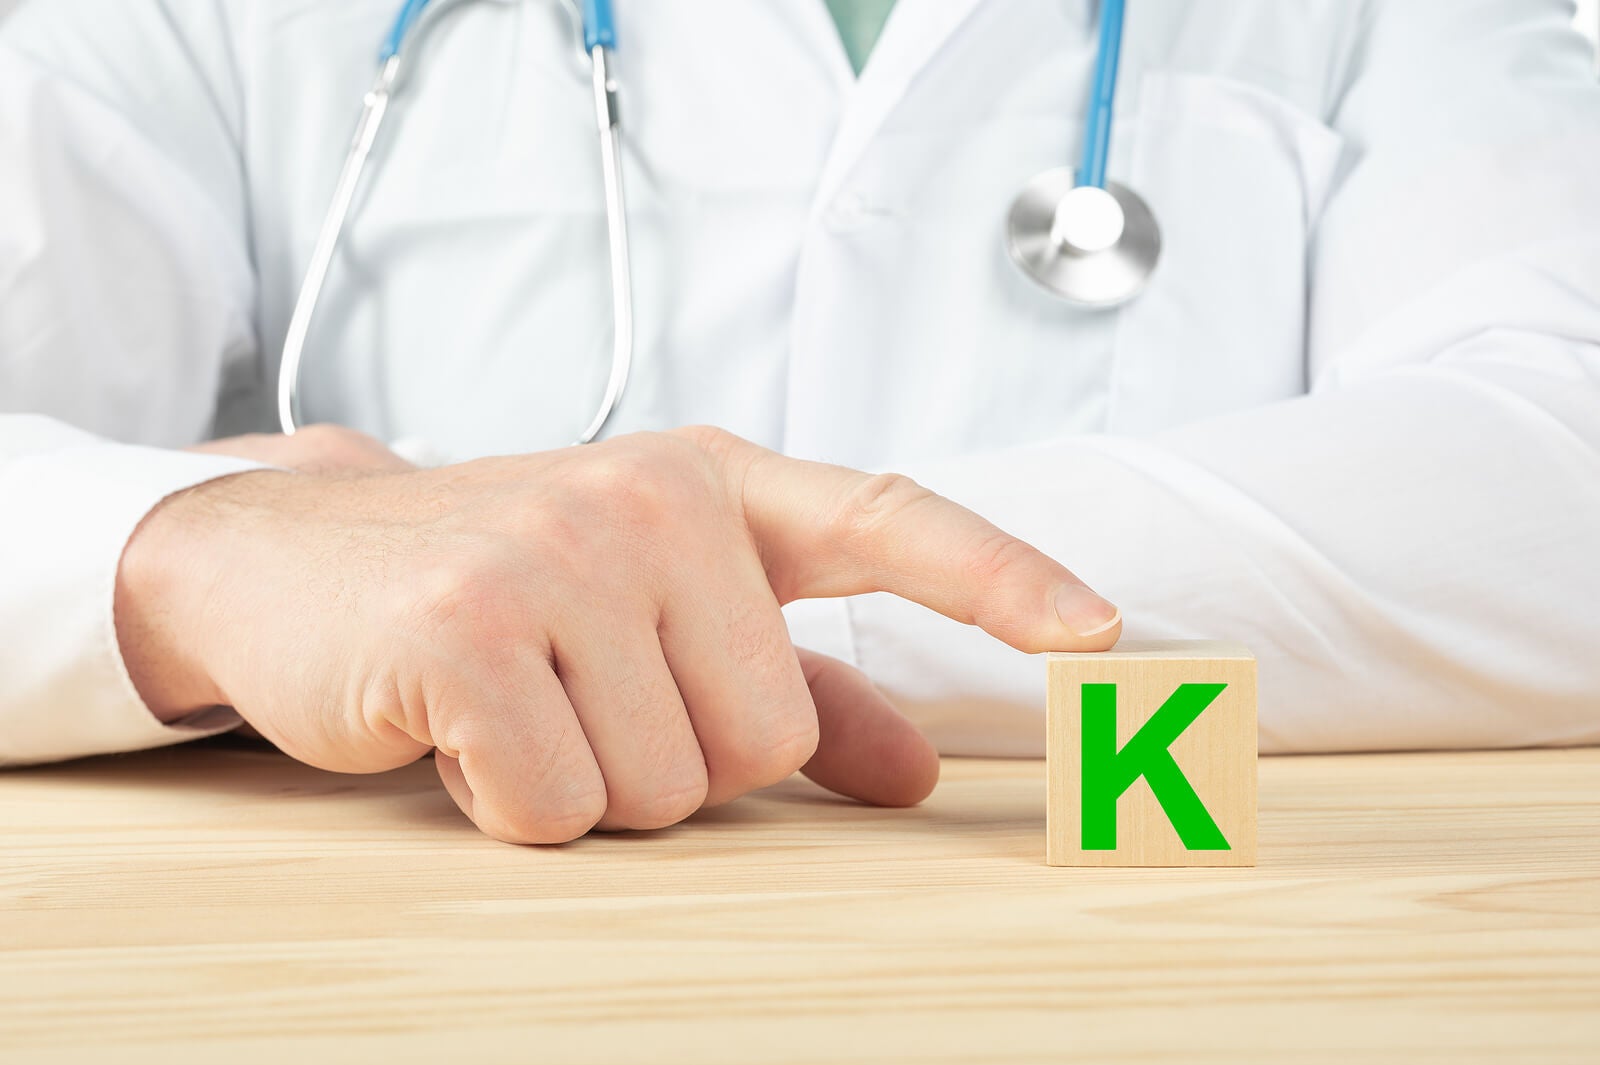 La vitamina K está indicada para algunos pacientes.